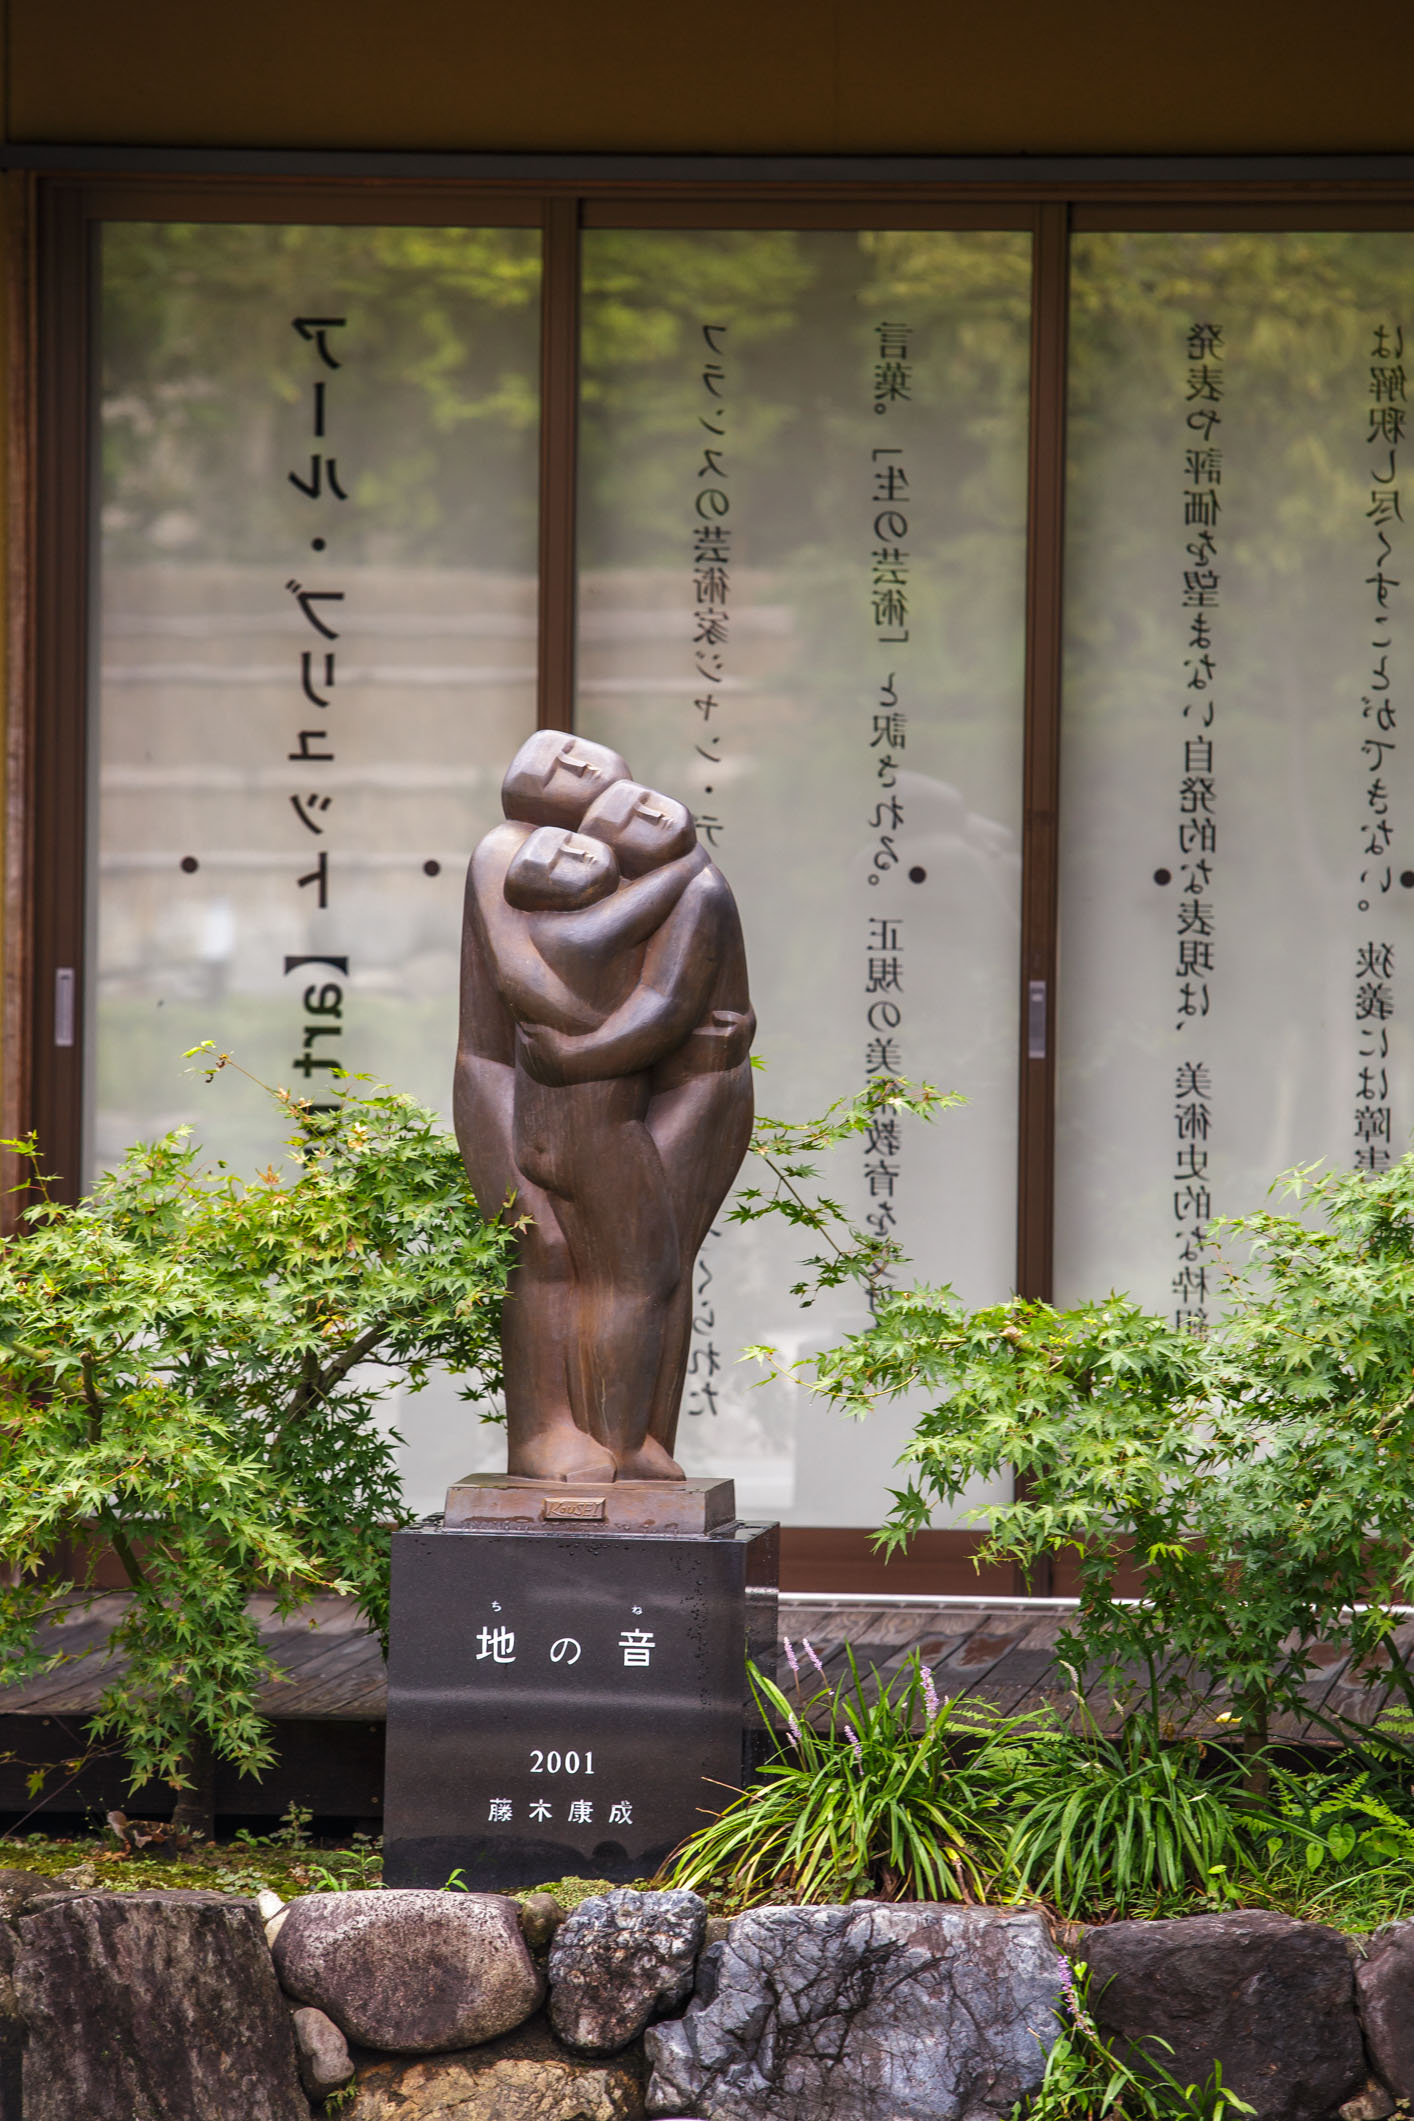 /Guewen/galeries/public/Voyages/Japon/kyoto/Arashiyama/Arashiyama_006.jpg